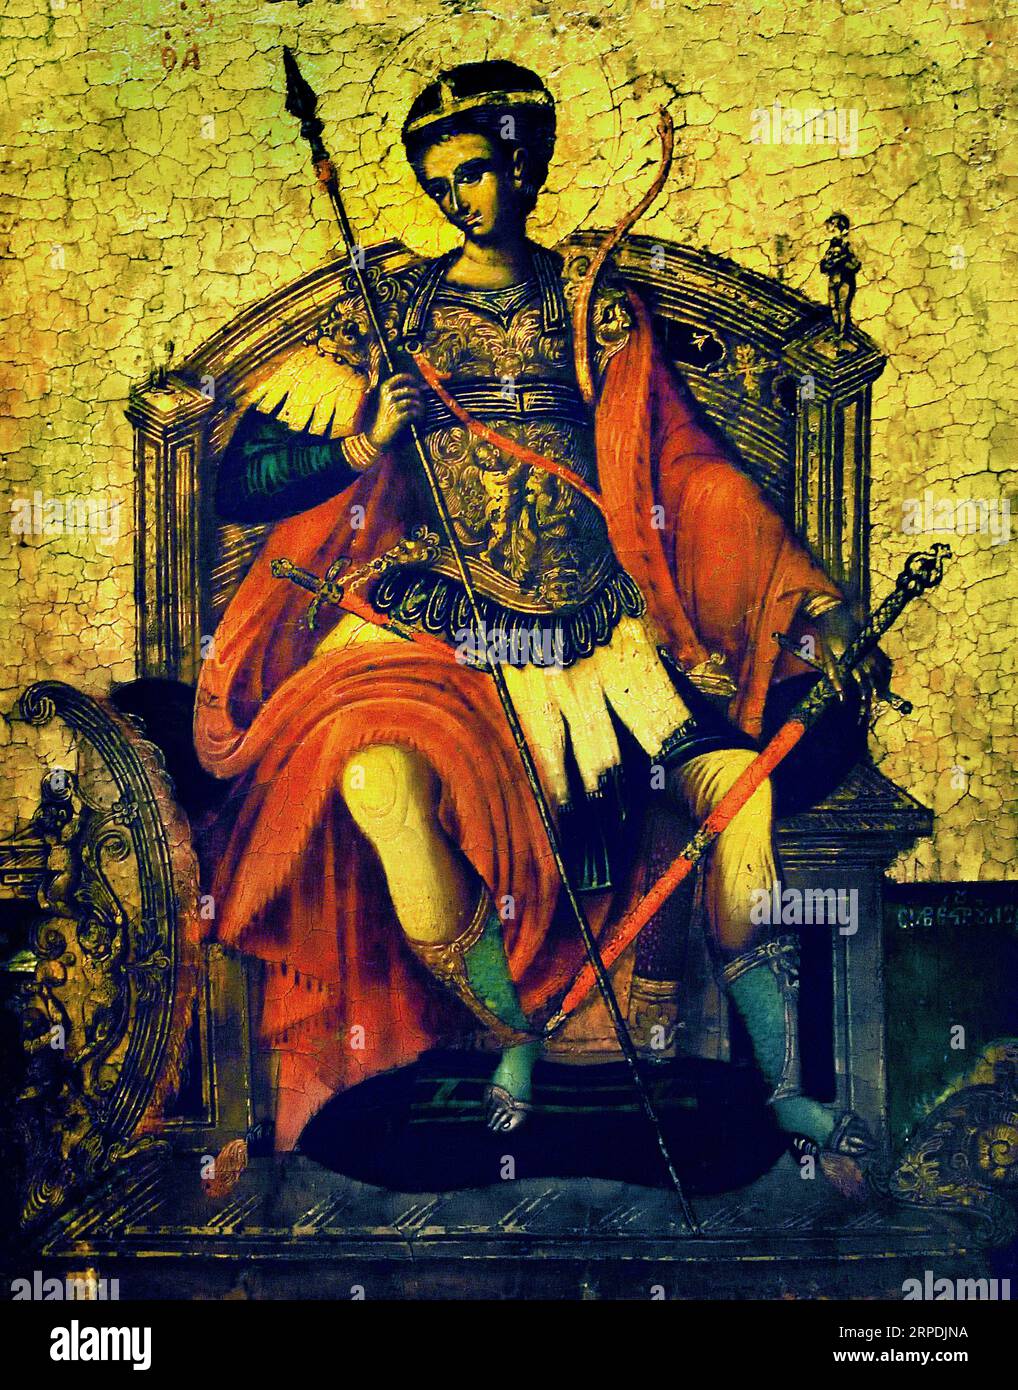 Ikone des Heiligen Demetrios gemalt von Silvestros Desos, 17. Jahrhundert Athen Griechenland Byzantinisches Museum Orthodoxe Kirche Griechisch ( Icon ) Stockfoto